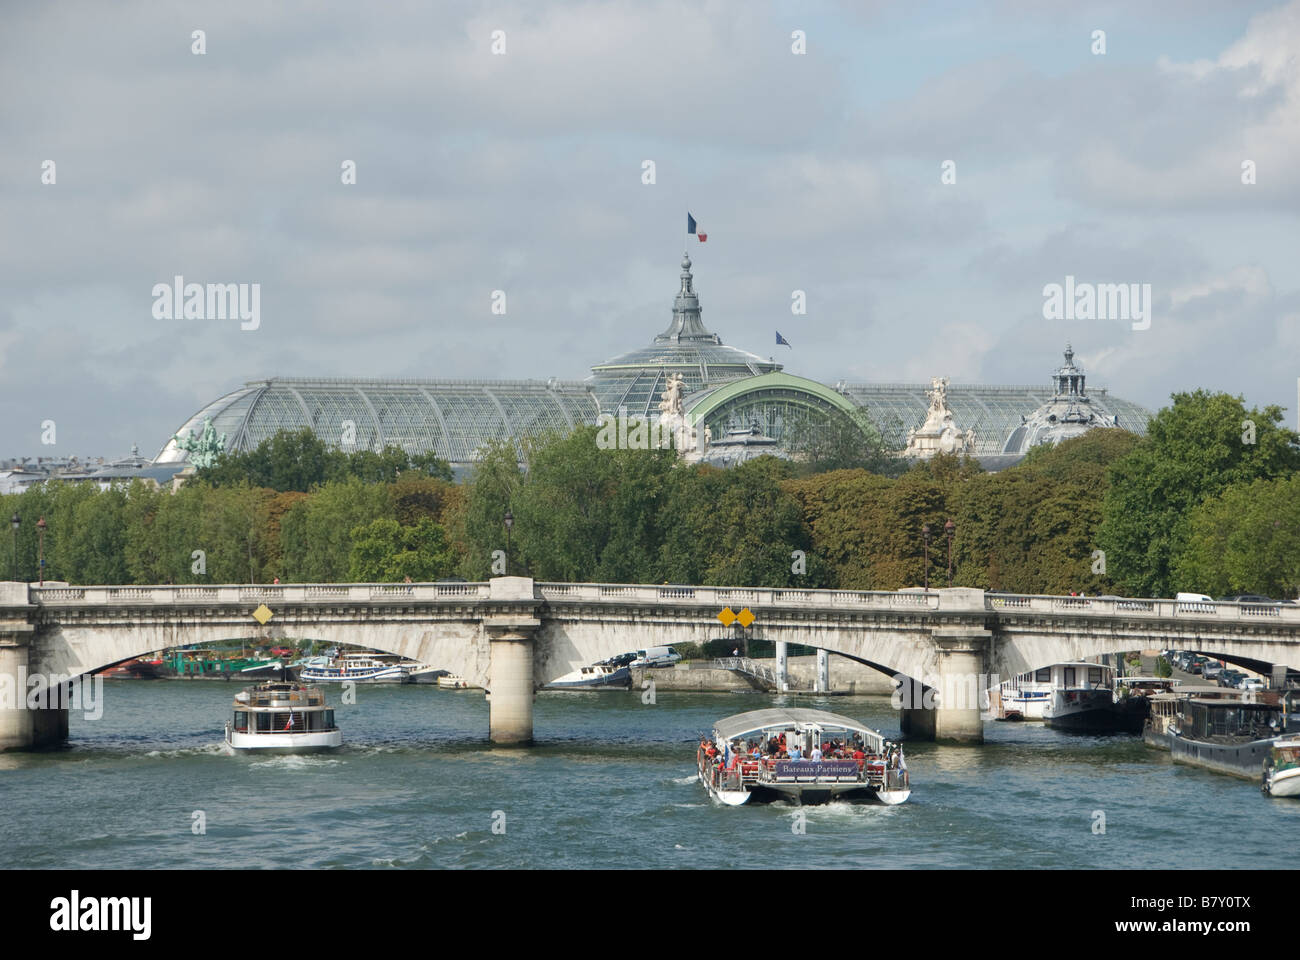 Bateau Mouche on River Seine Pont de la Concorde and Grand Palais in Paris France Stock Photo